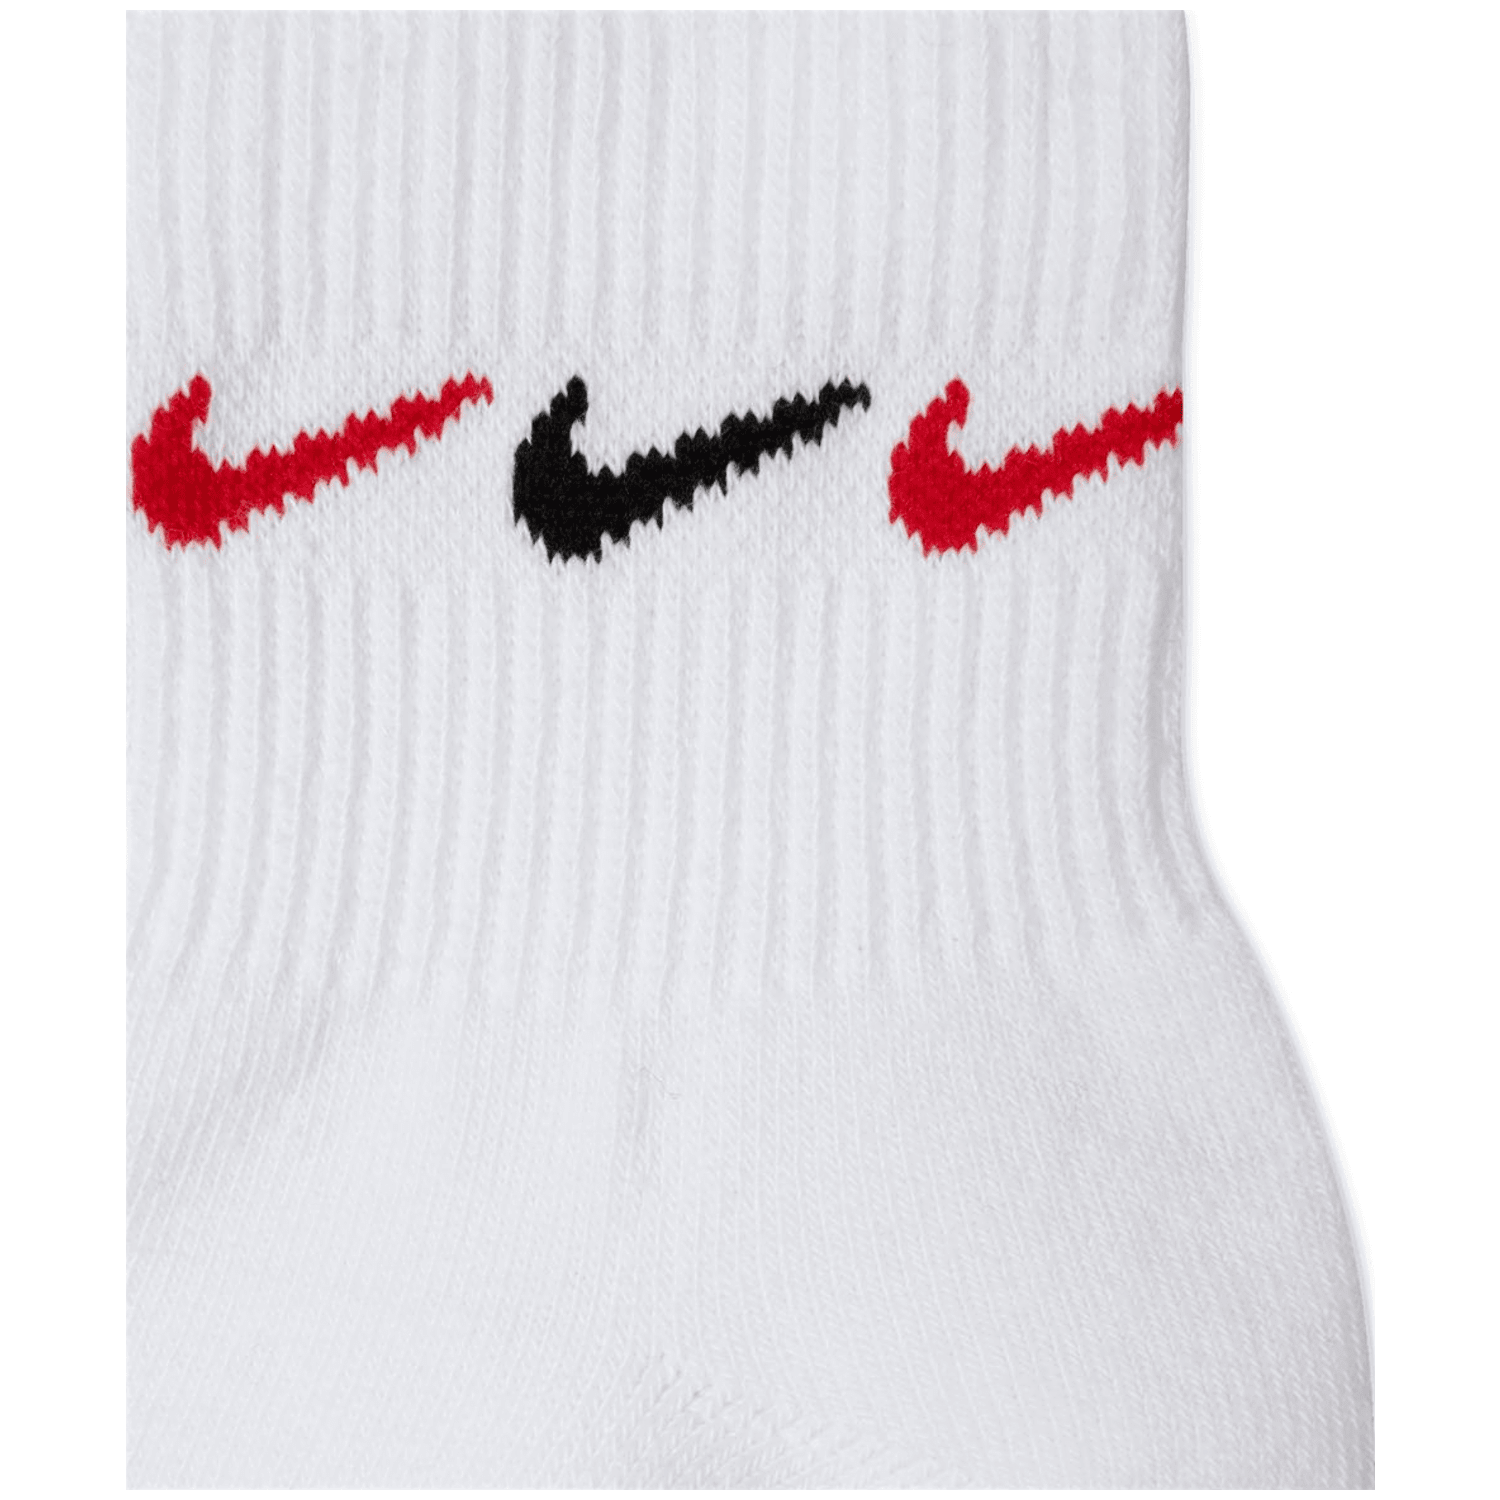 Nike Everyday Plus Cushioned Training (3 Pairs) Herren Socken